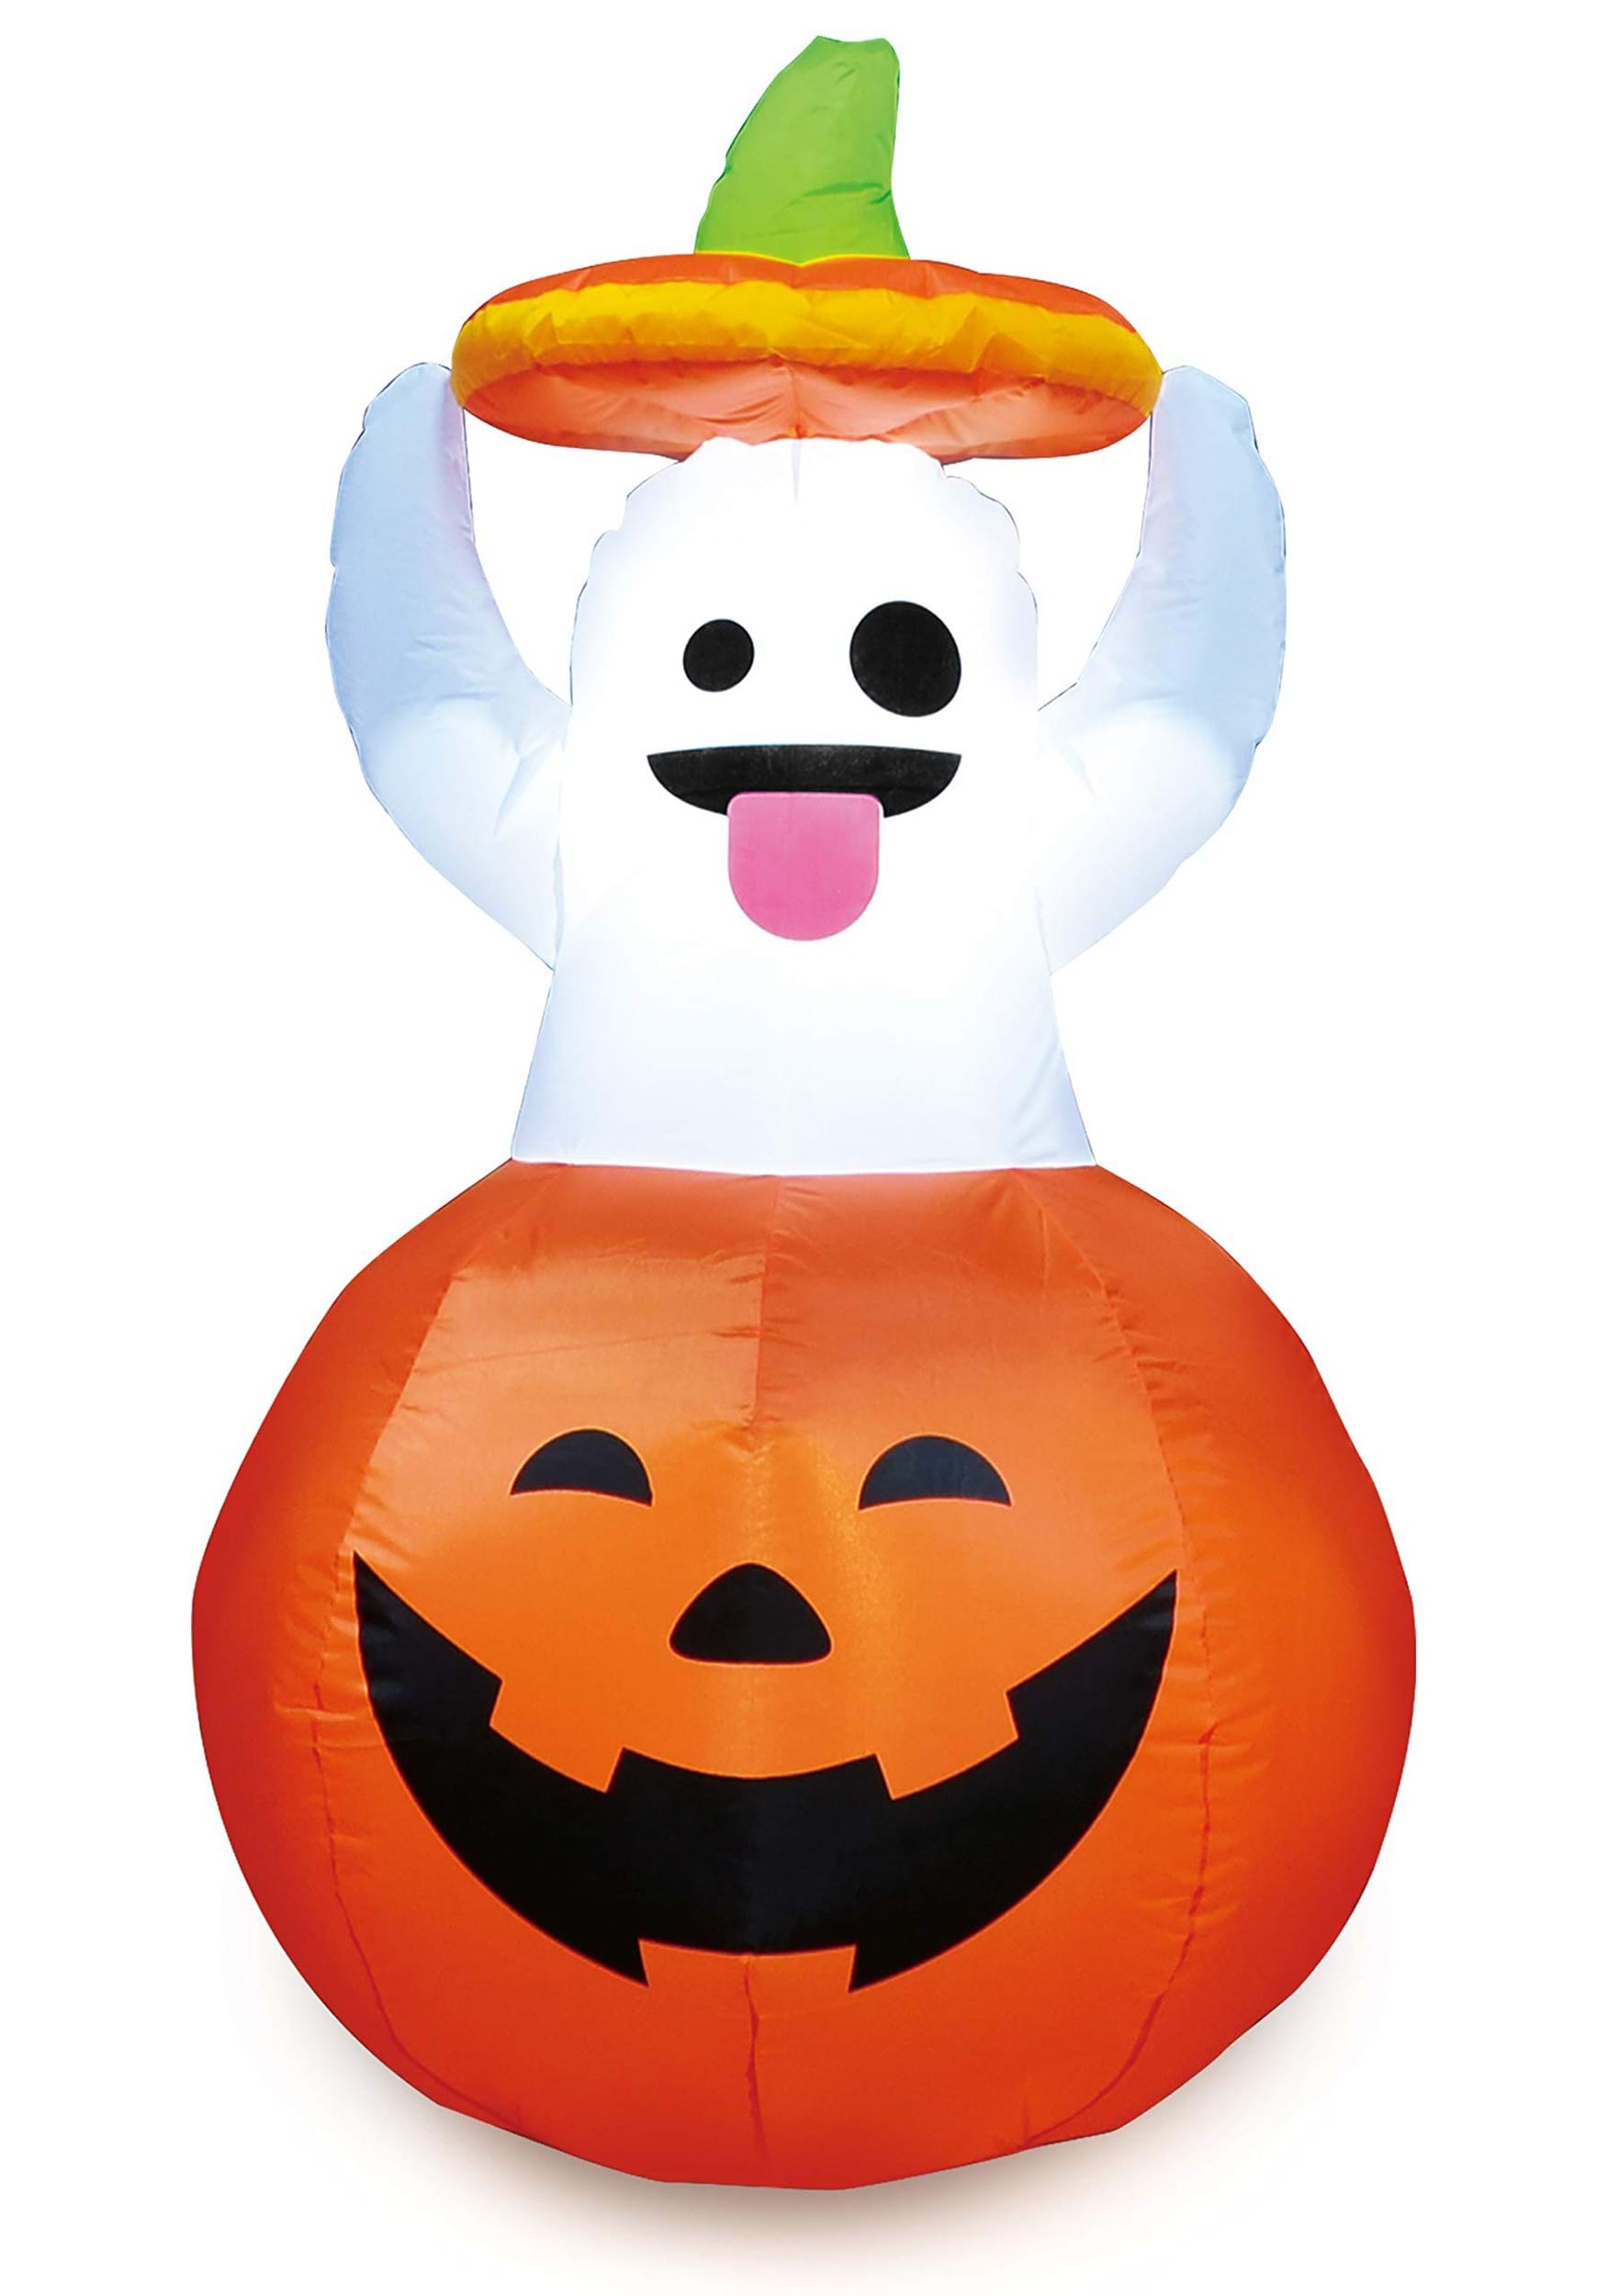 Fantasma inflable de 5 pies en la decoración de Halloween de calabaza Multicolor Colombia